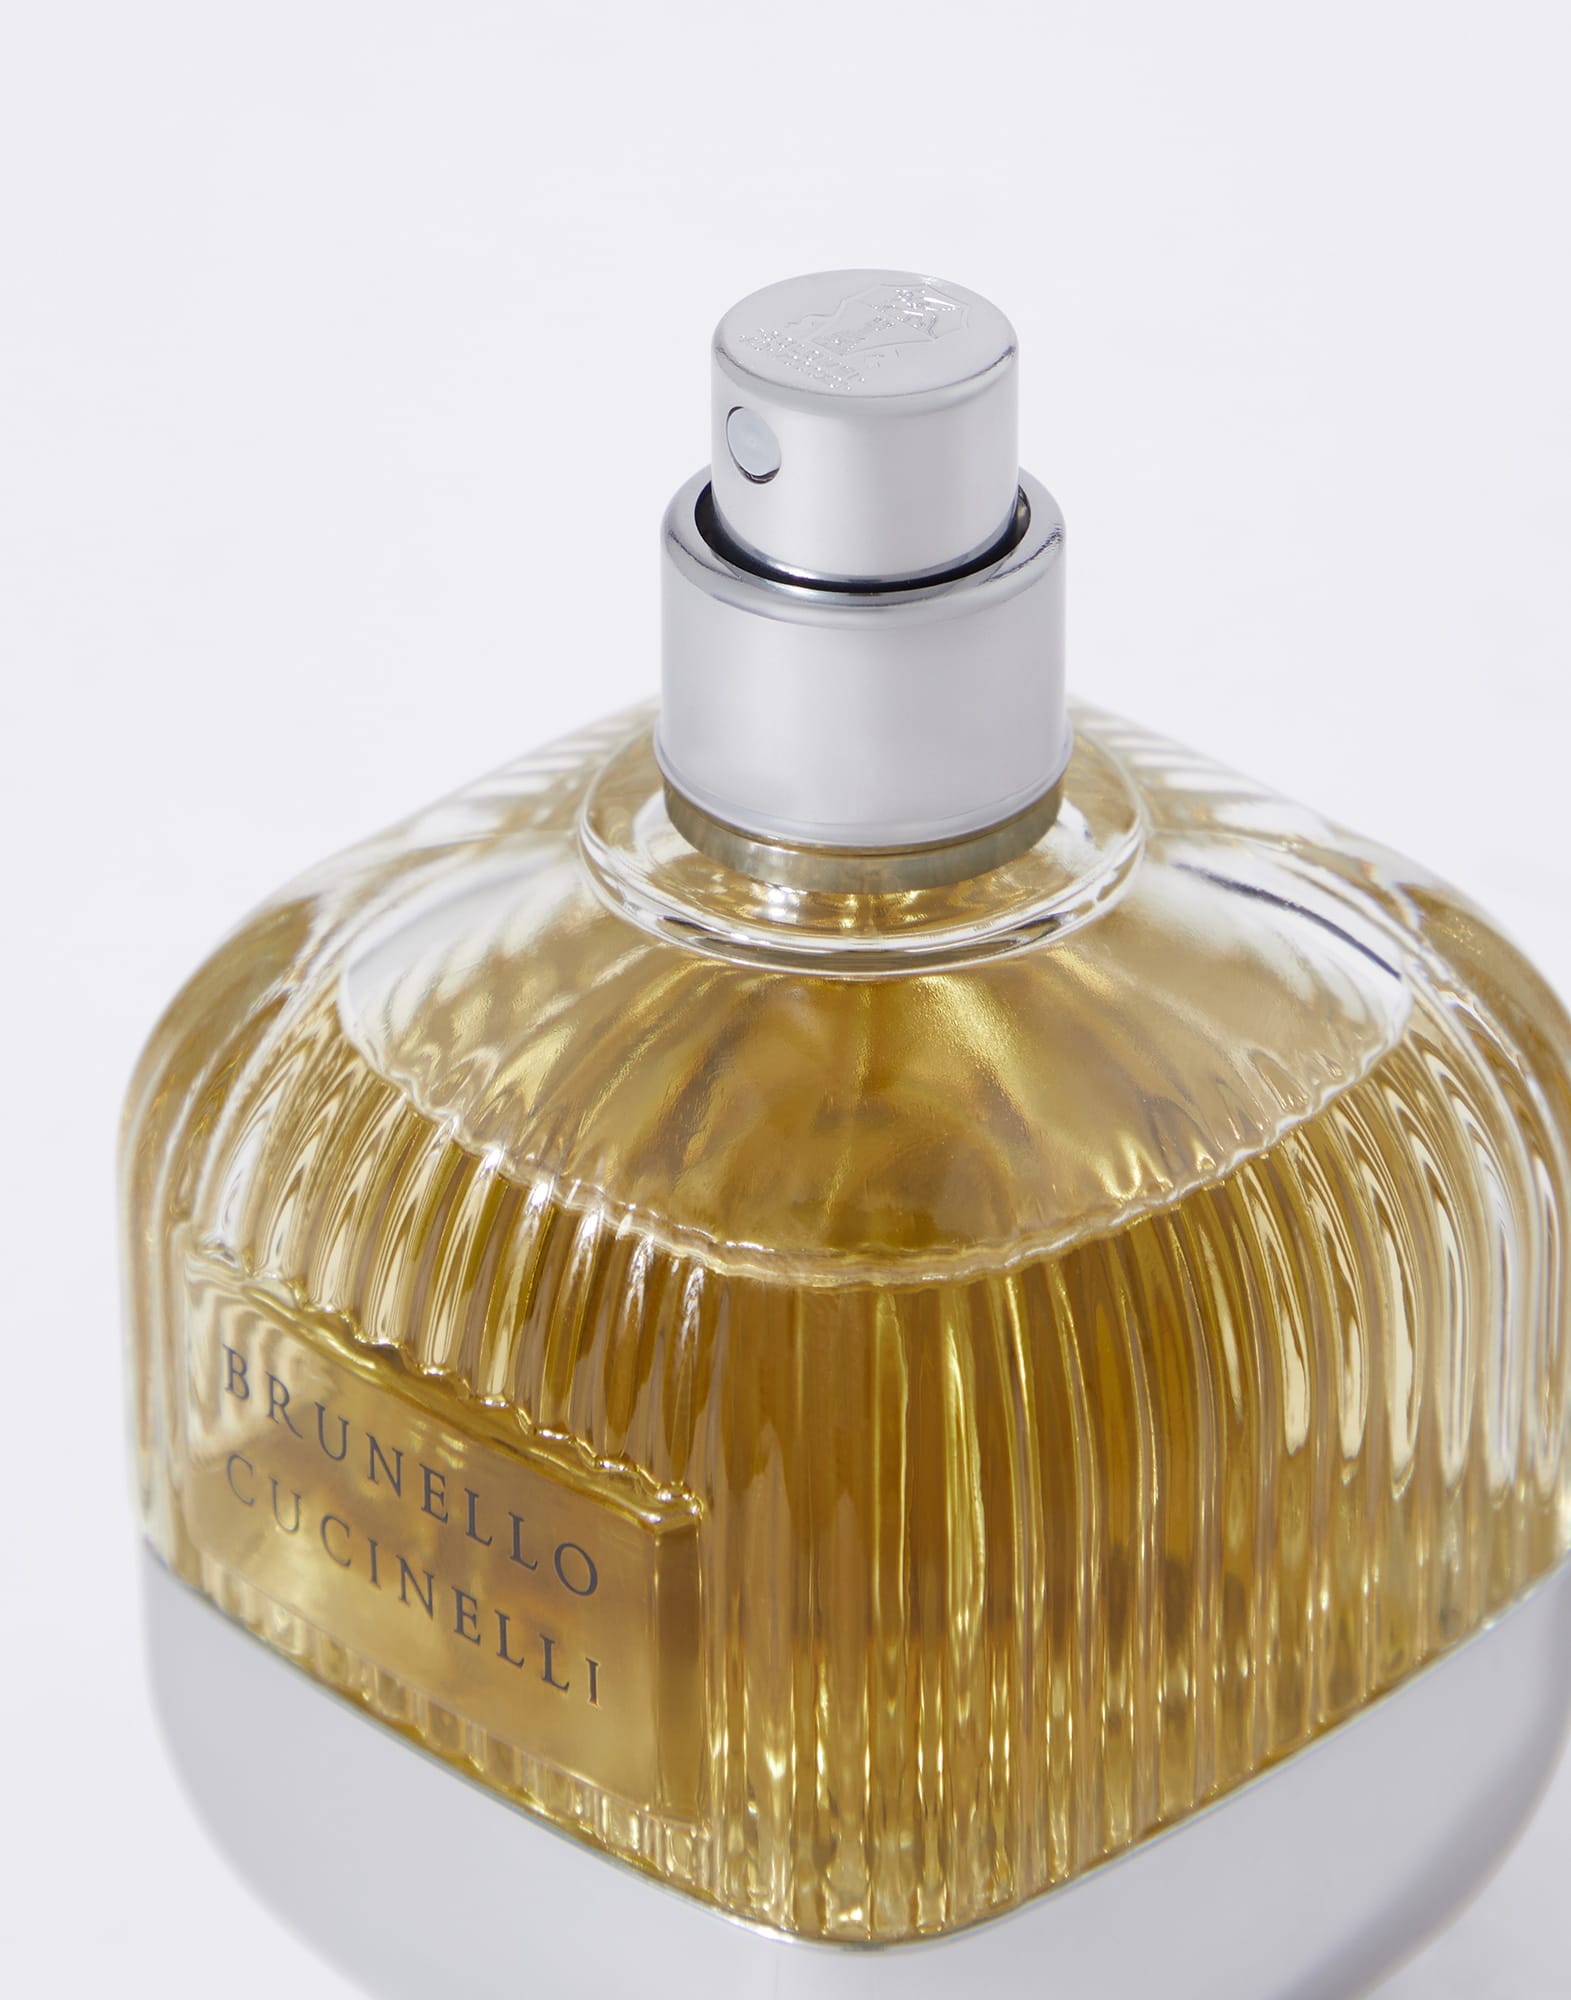 Brunello Cucinelli entra no universo da perfumaria